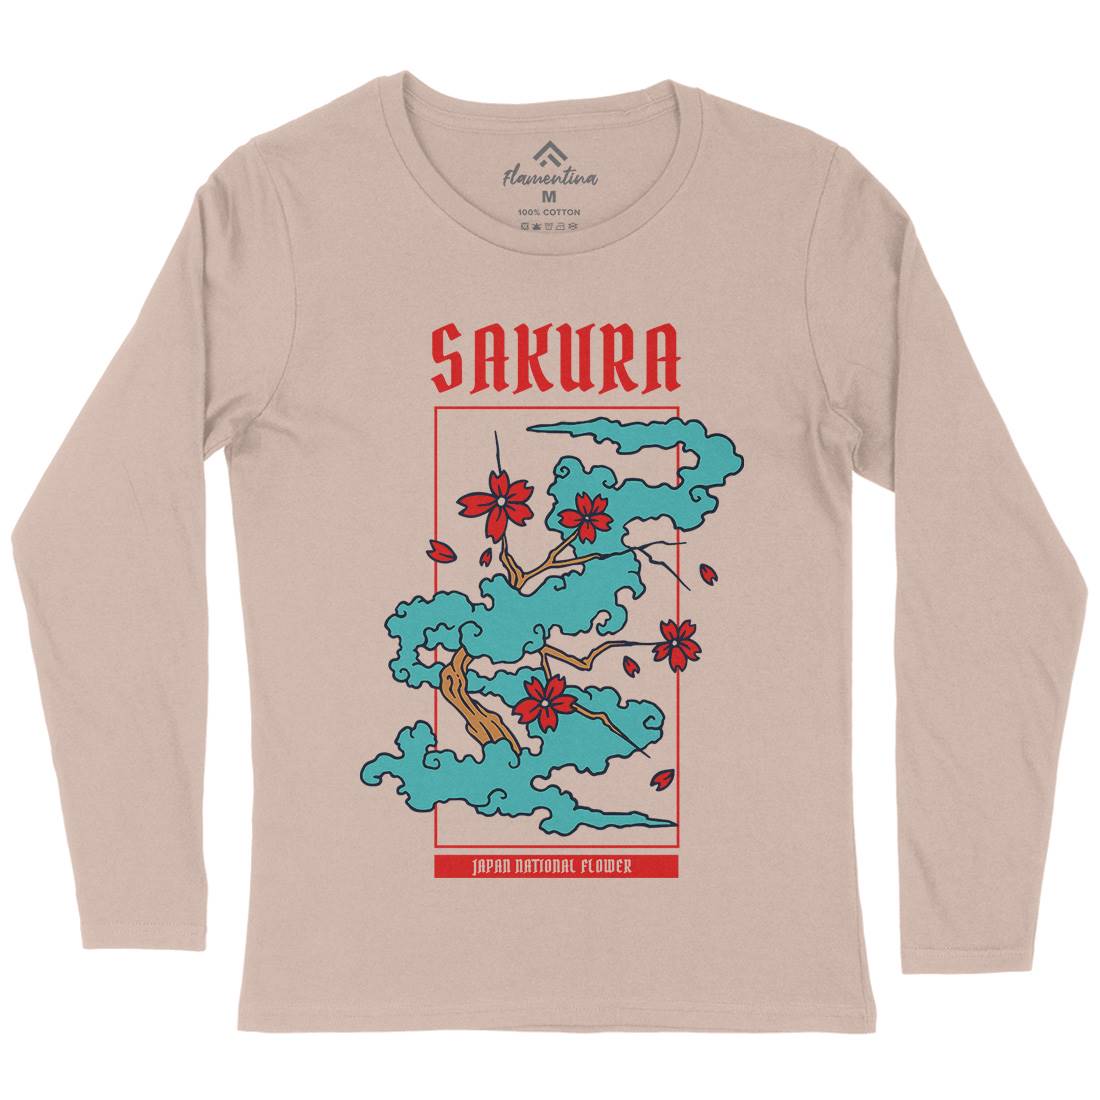 Sakura Womens Long Sleeve T-Shirt Asian C766